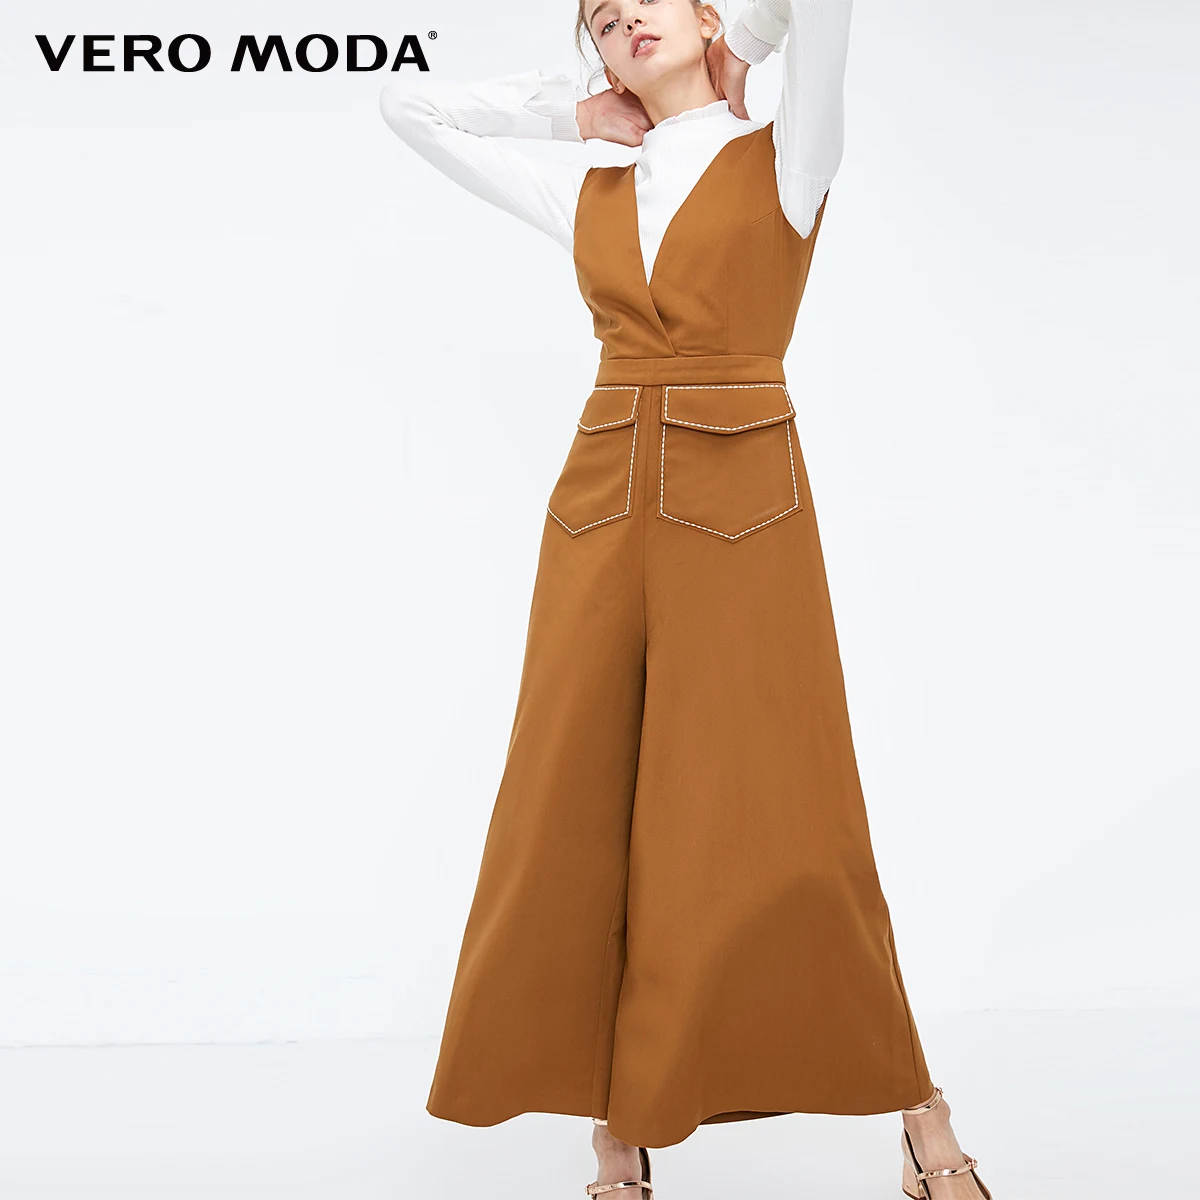 Vero Moda женский укороченный комбинезон с видимыми стежками | 318344513 - Цвет: Burnt caramel